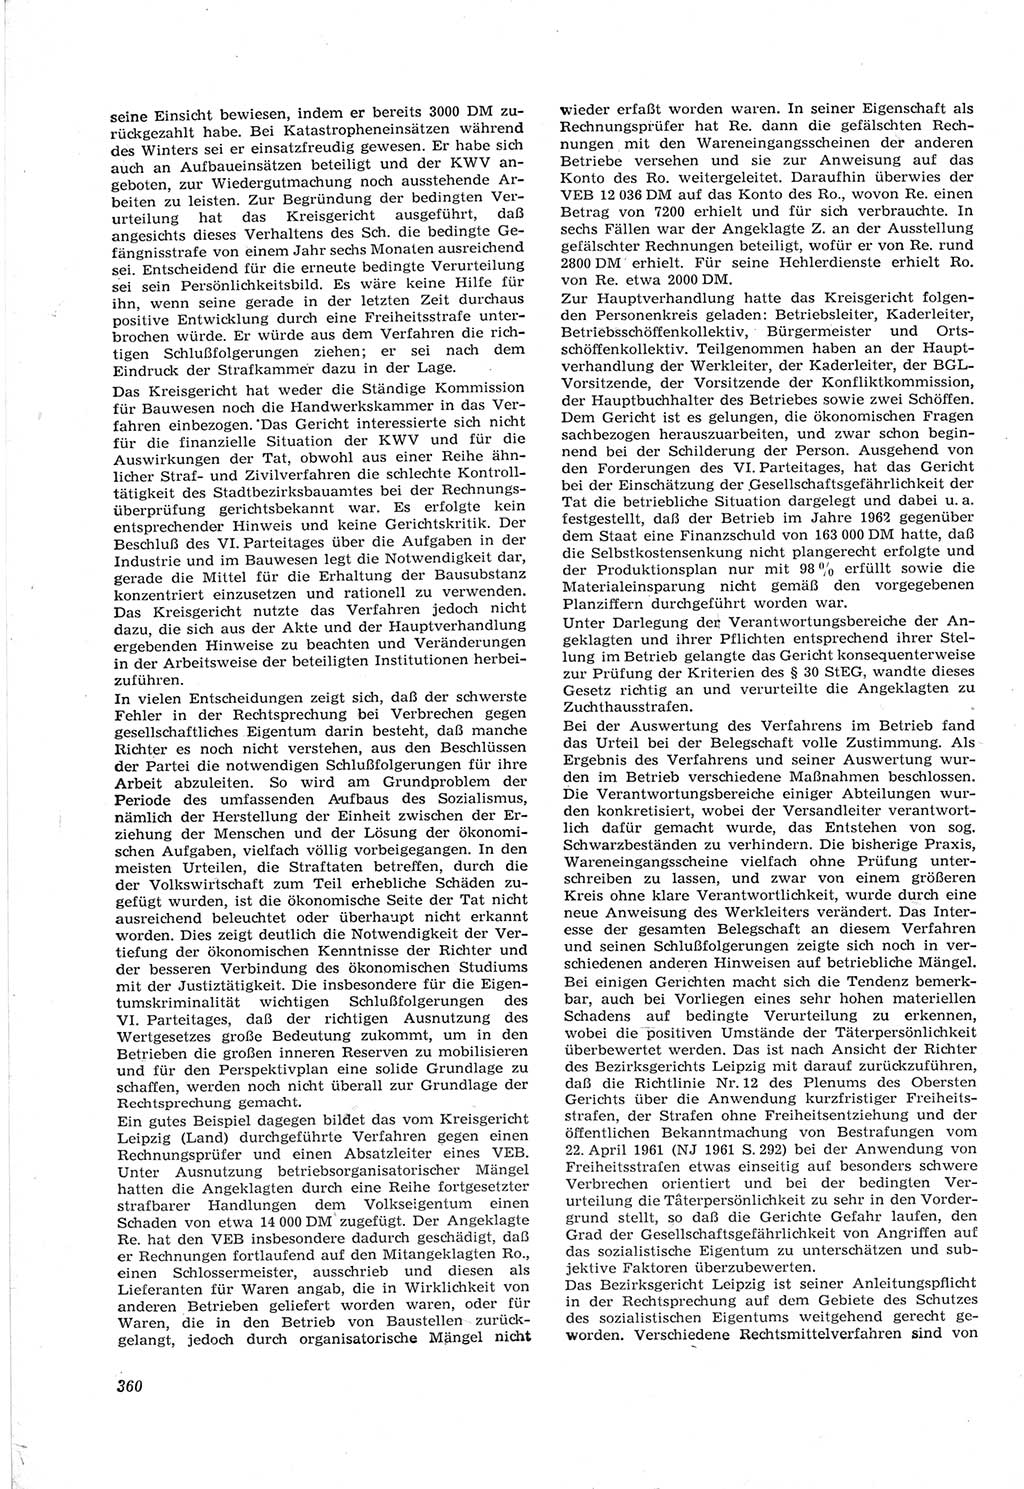 Neue Justiz (NJ), Zeitschrift für Recht und Rechtswissenschaft [Deutsche Demokratische Republik (DDR)], 17. Jahrgang 1963, Seite 360 (NJ DDR 1963, S. 360)